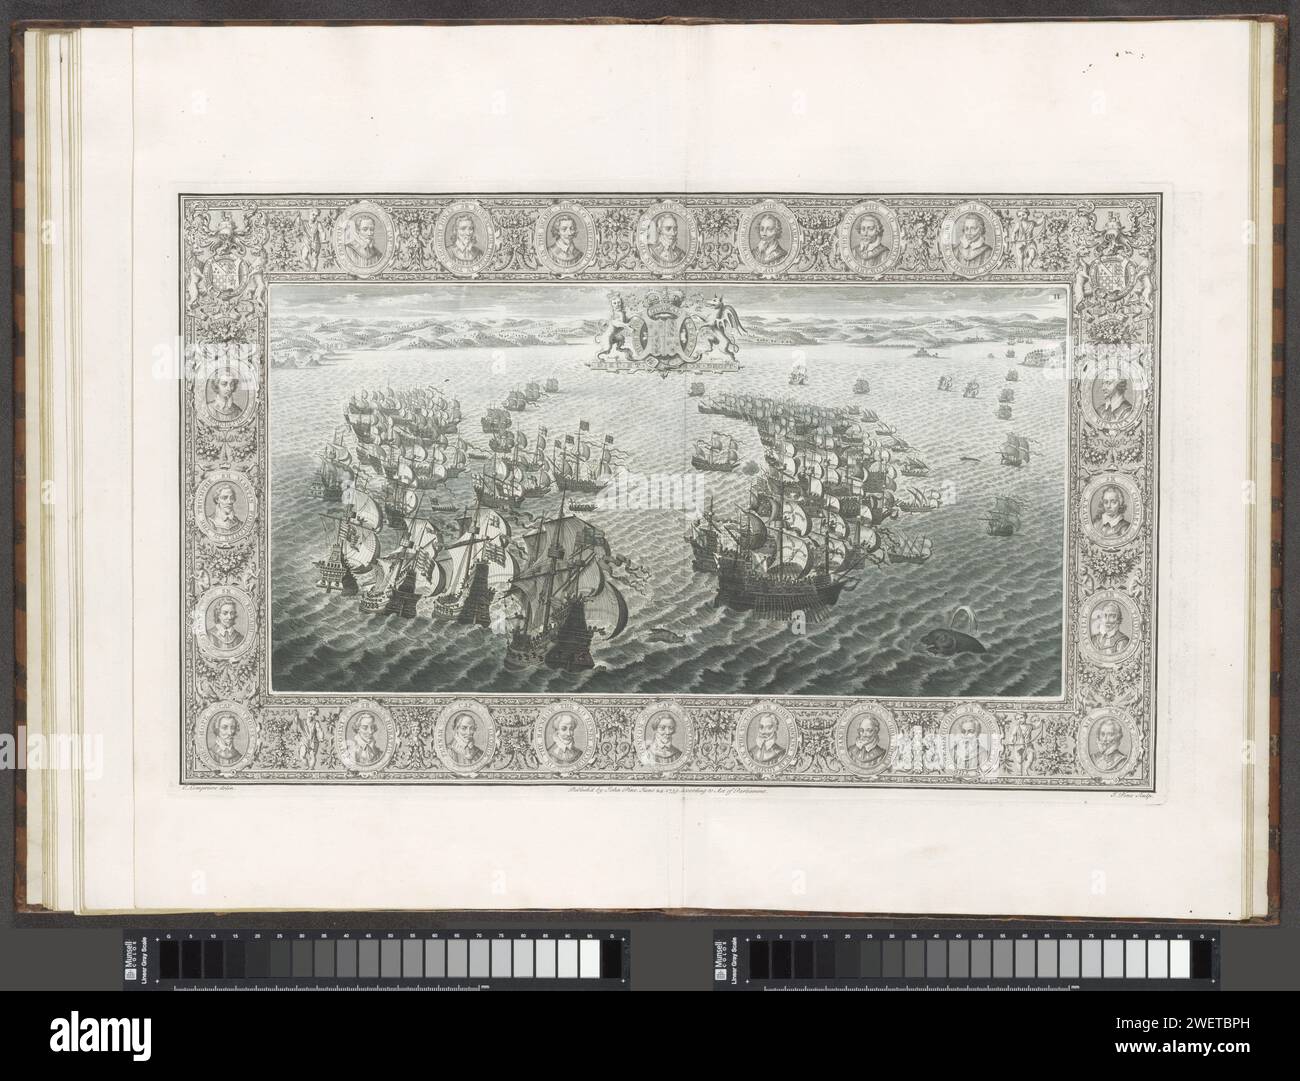 Reproduction d'un tapis mural sur l'Armada espagnole (20-21 juillet), 1739 imprimer la flotte anglaise (à gauche) et espagnole (à droite) dans le canal sous la côte de Cornouailles et Devon avec au sommet des armoiries de la reine anglaise Elizabeth I. La performance (numérotée II) est contenue dans un bord orné avec 22 portraits de commandants de la flotte anglaise. Au milieu du portrait de Charles Howard, le Lord High Admiral. Il y a des armes dans les coins supérieurs. Entre les portraits de guildes de fleurs et de fruits, singes, oiseaux, puti, corne d'abondance etc Le spectacle fait partie d'un livre sur le SP Banque D'Images